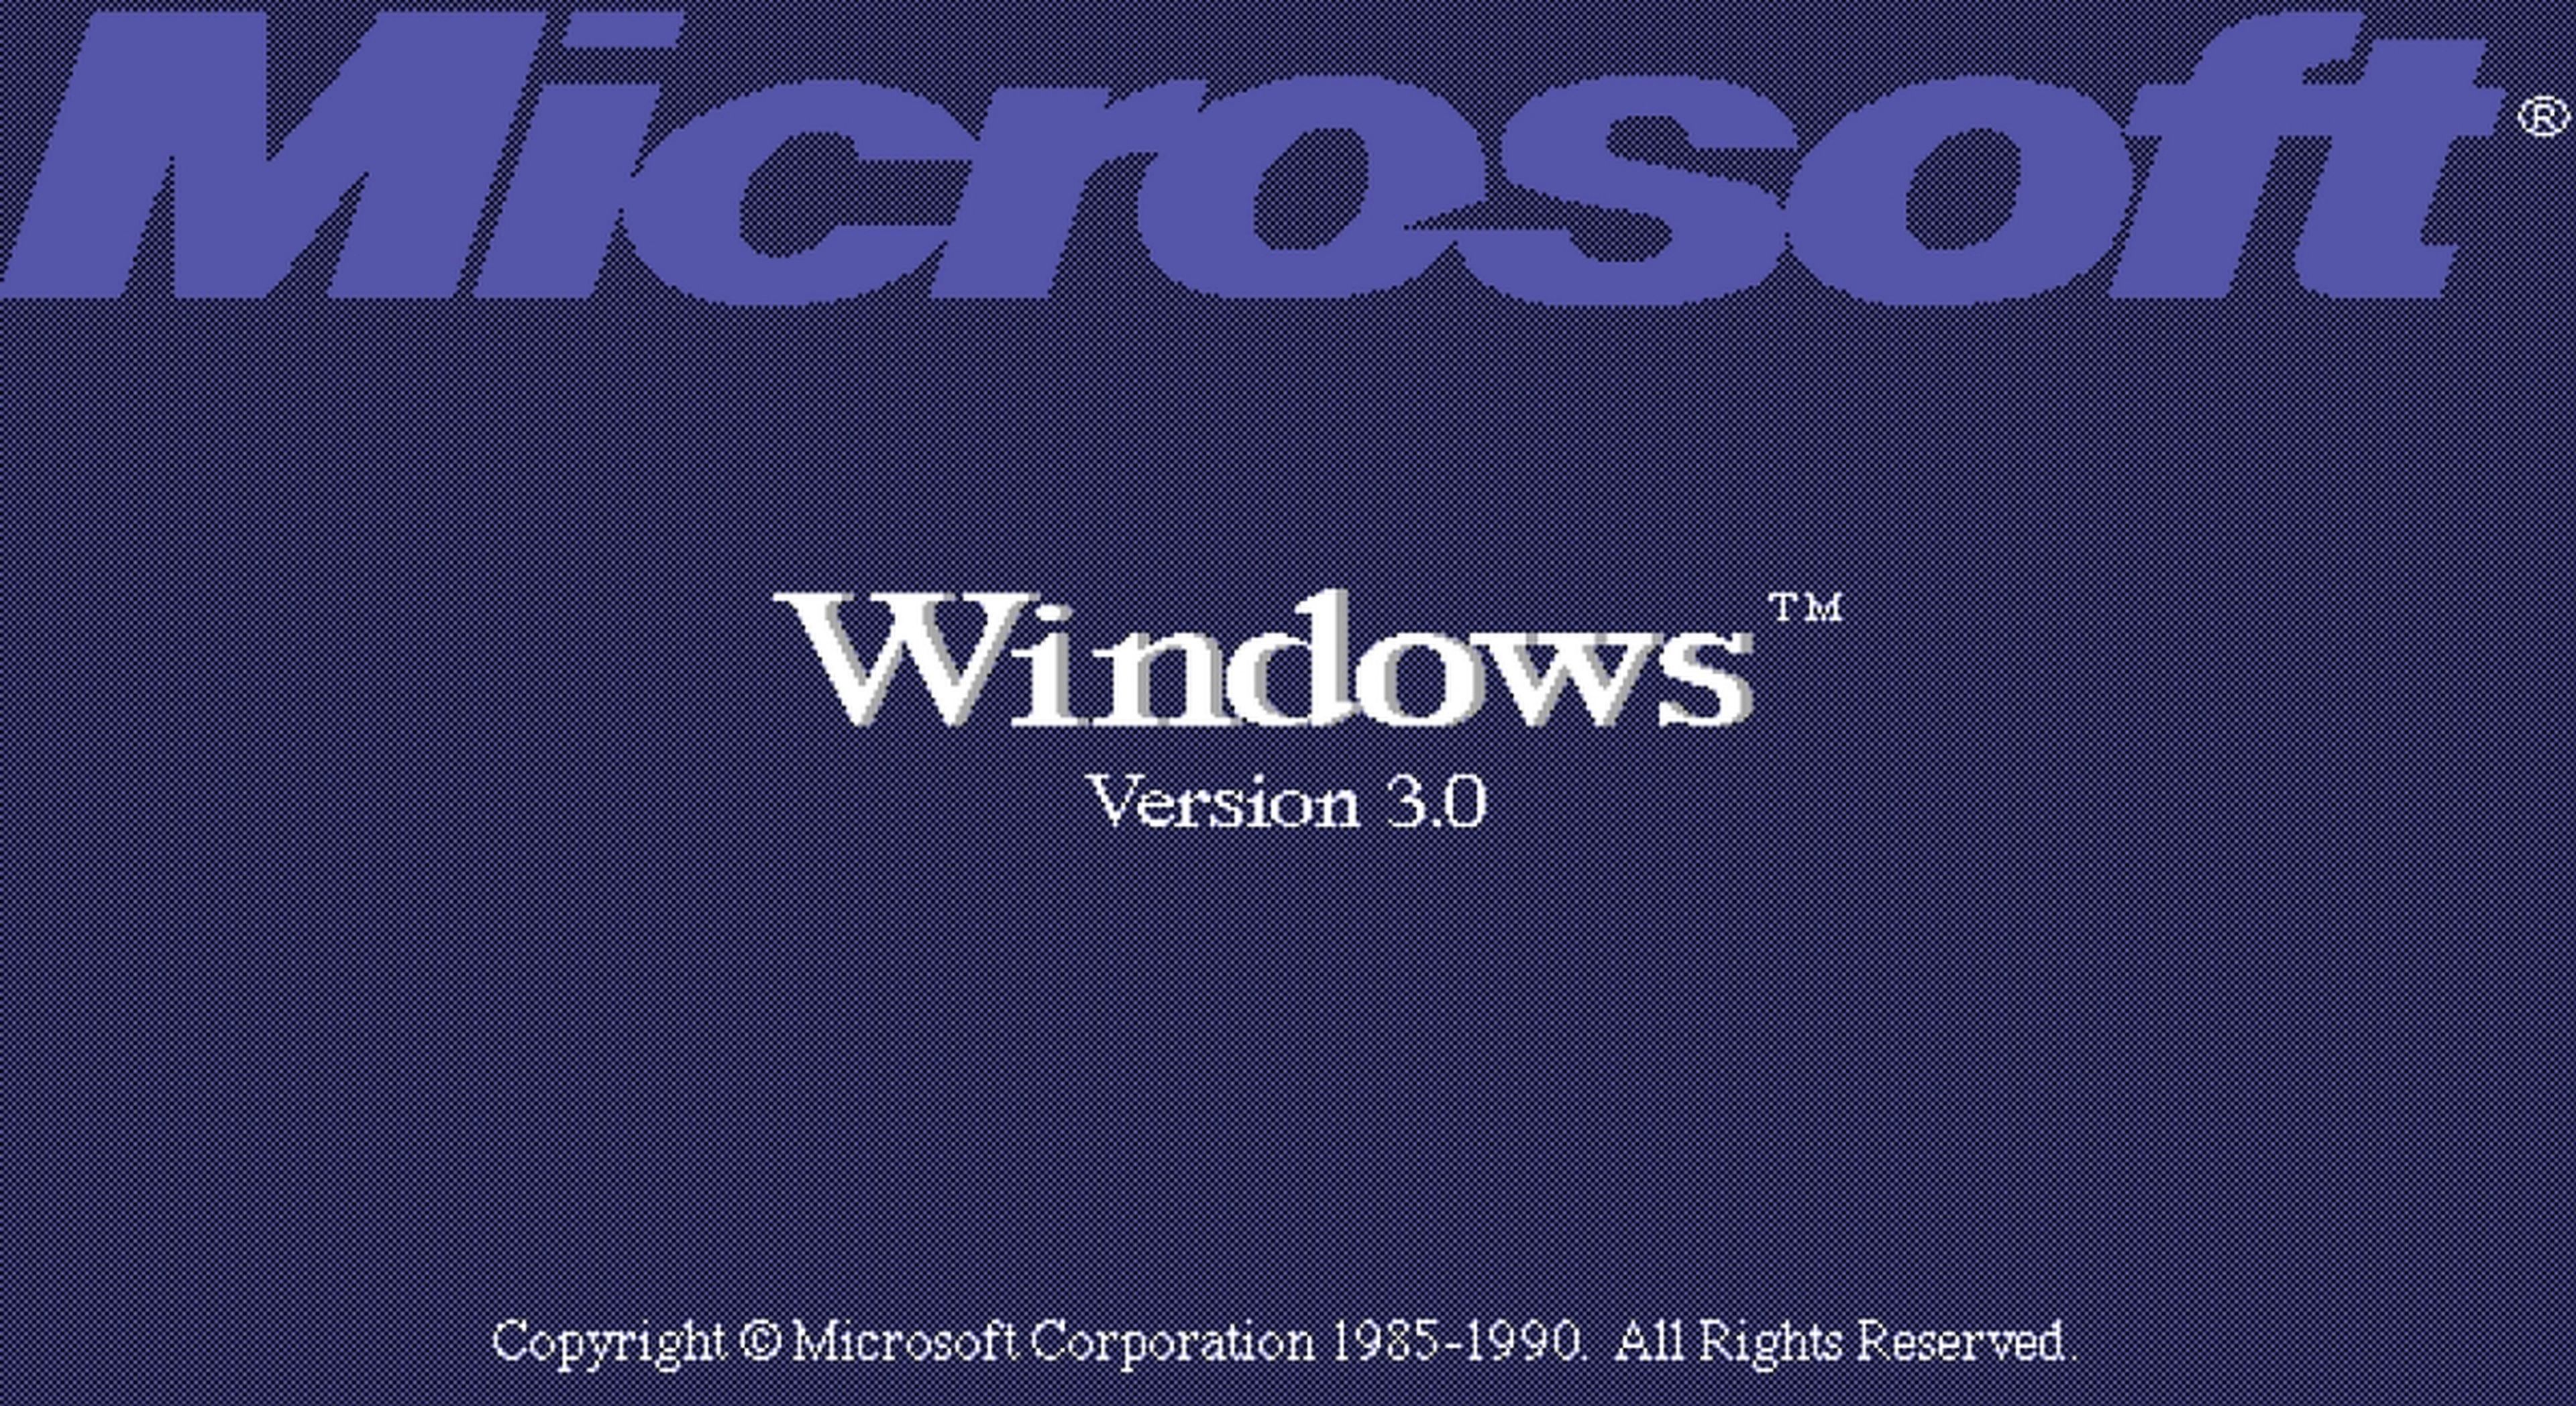 El Solitario, y Windows 3.0, cumplen 30 años